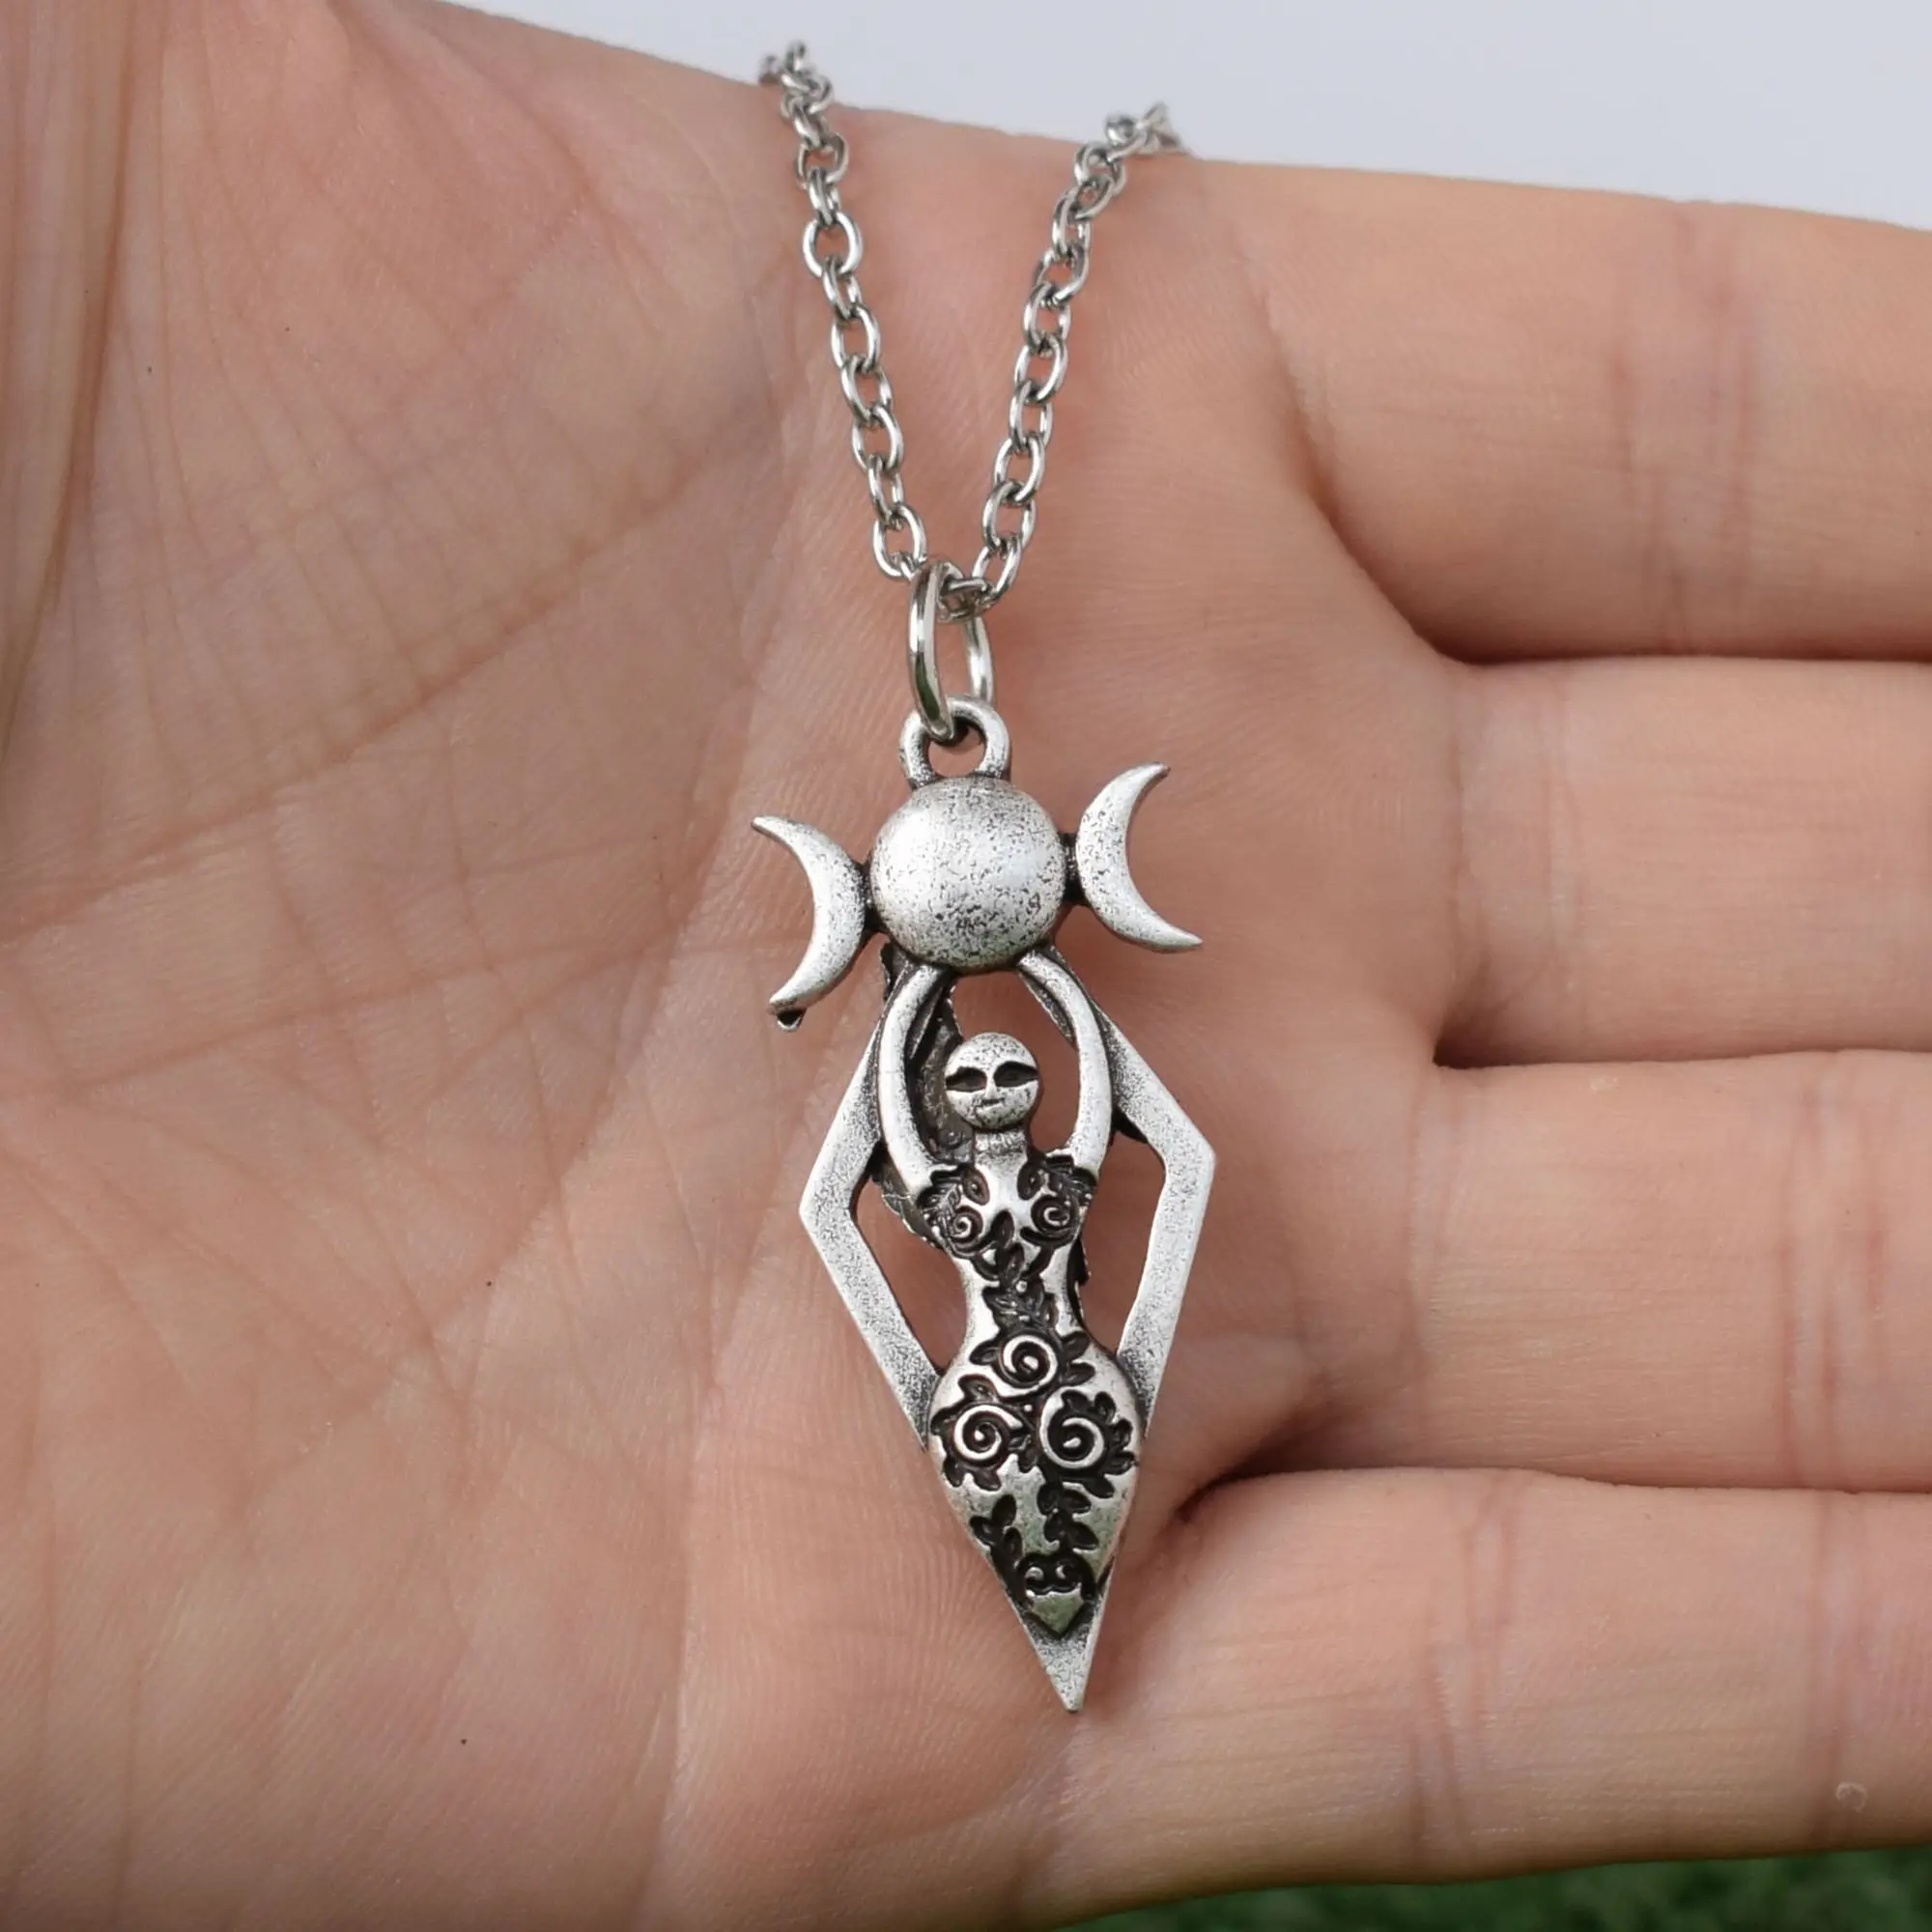 SanLan языческая Викканская подвеска ожерелье ювелирные изделия богиня колдовство натуральные ювелирные изделия языческие подарки Wicca